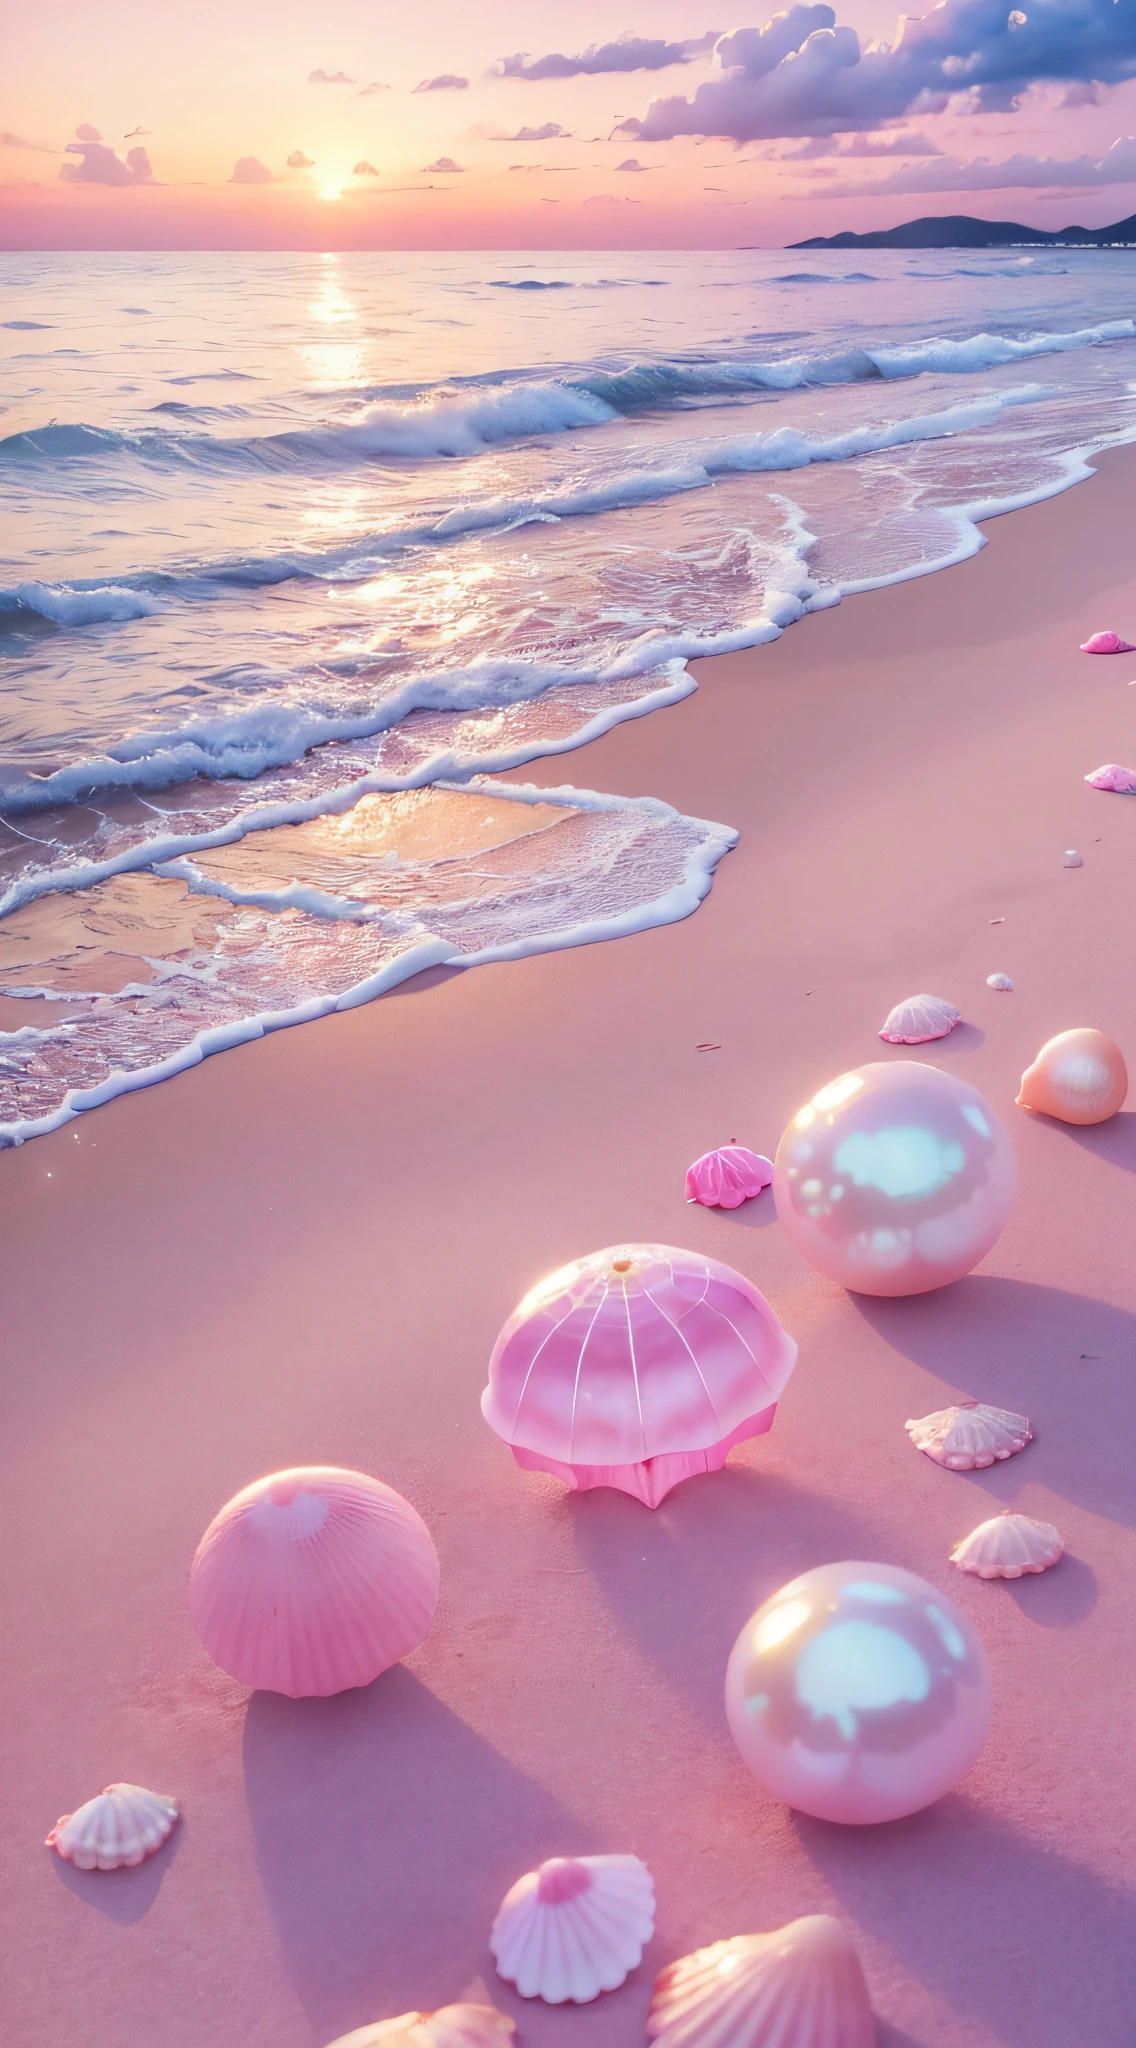 (8千, RAW 照片, 最好的质量, 桌上: 1.2), (实际的, 实际的: 1.37) There are pink 贝壳 on the beach, 有水, 珠光, 珍珠 and 贝壳, 软溢出, 珍珠, 粉色水母随处可见, 软3D渲染, 空灵的泡泡, 泡泡景观, 埃莱着色器, 粉彩粉色, 粉红色的反射, 珍珠天空, 贝壳, 天堂粉红, 柔和的色彩, 粉彩,